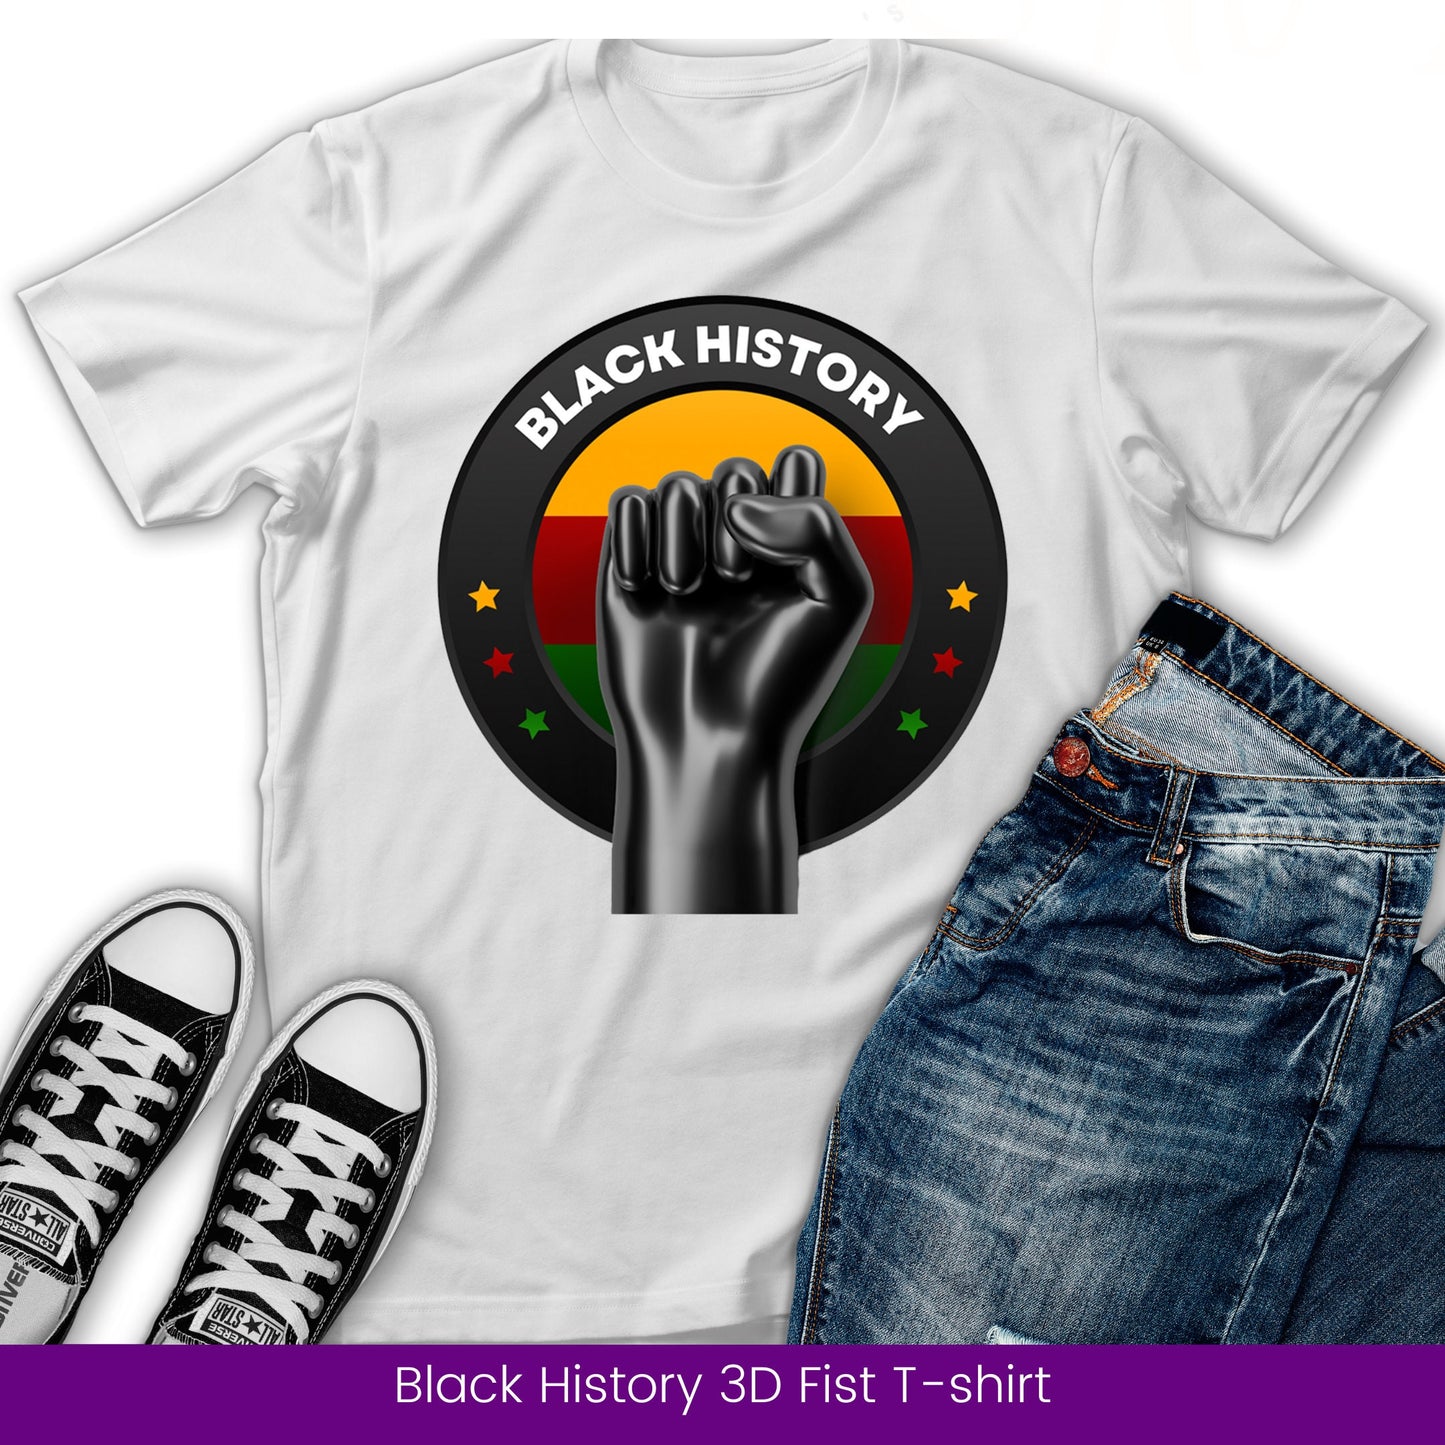 Black History 3D Fist, Black Pride, Black Lives Matter, Juneteenth